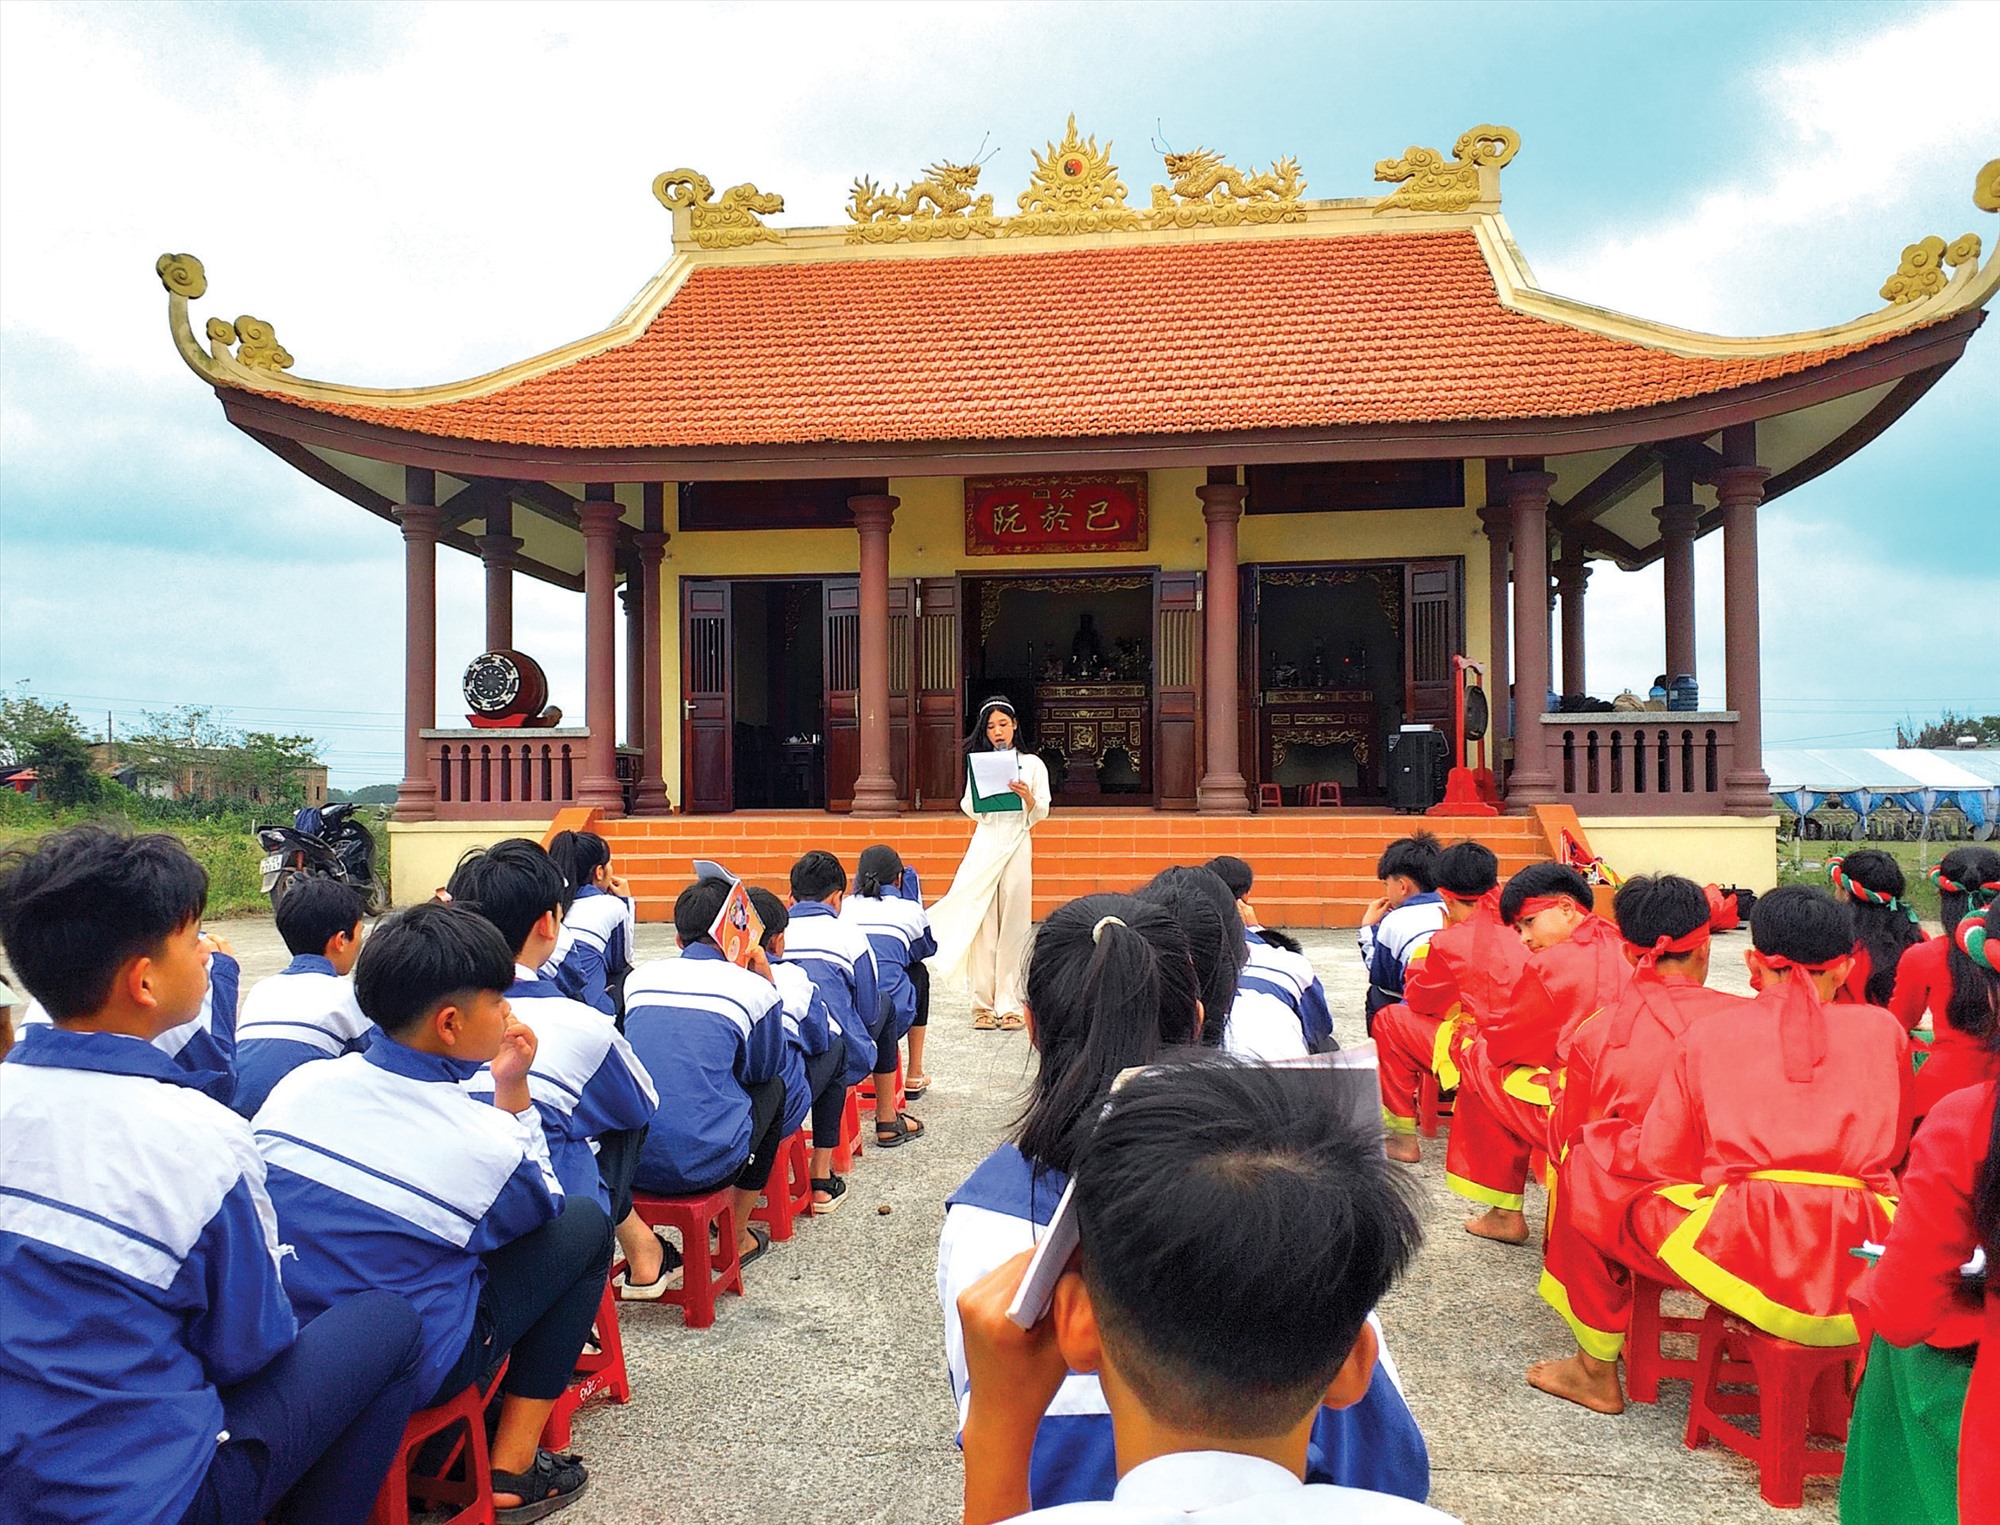 Hoạt động ngoại khóa tại Đền thờ ngài Thái phó Nguyễn Ư Dĩ, giúp học sinh tìm hiểu truyền thống lịch sử của quê hương, đất nước -Ảnh: N.K